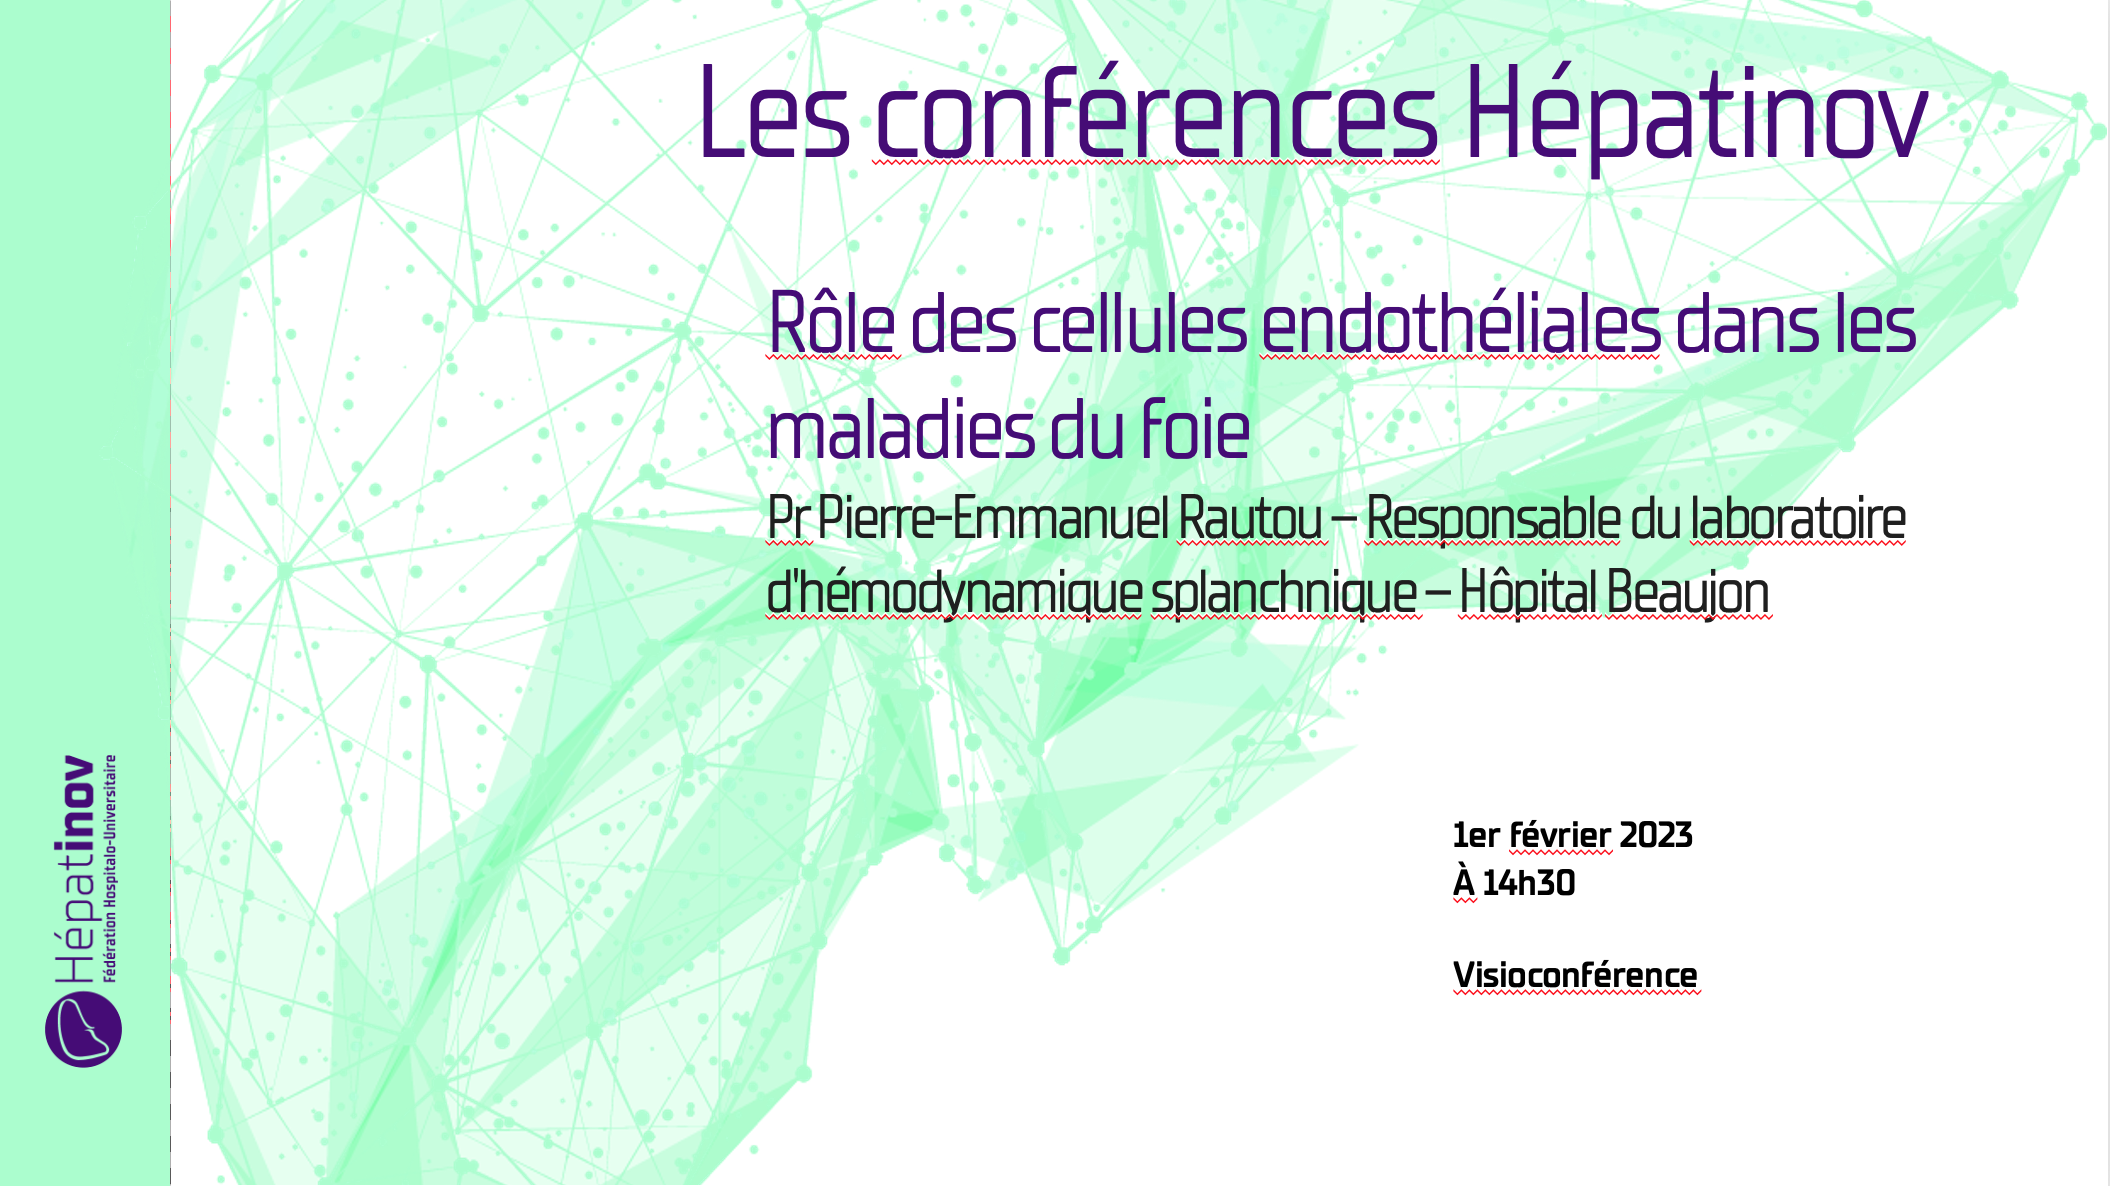 Les conférences Hépatinov - Rôle des cellules endothéliales dans les maladies du foie - 1er février 2023